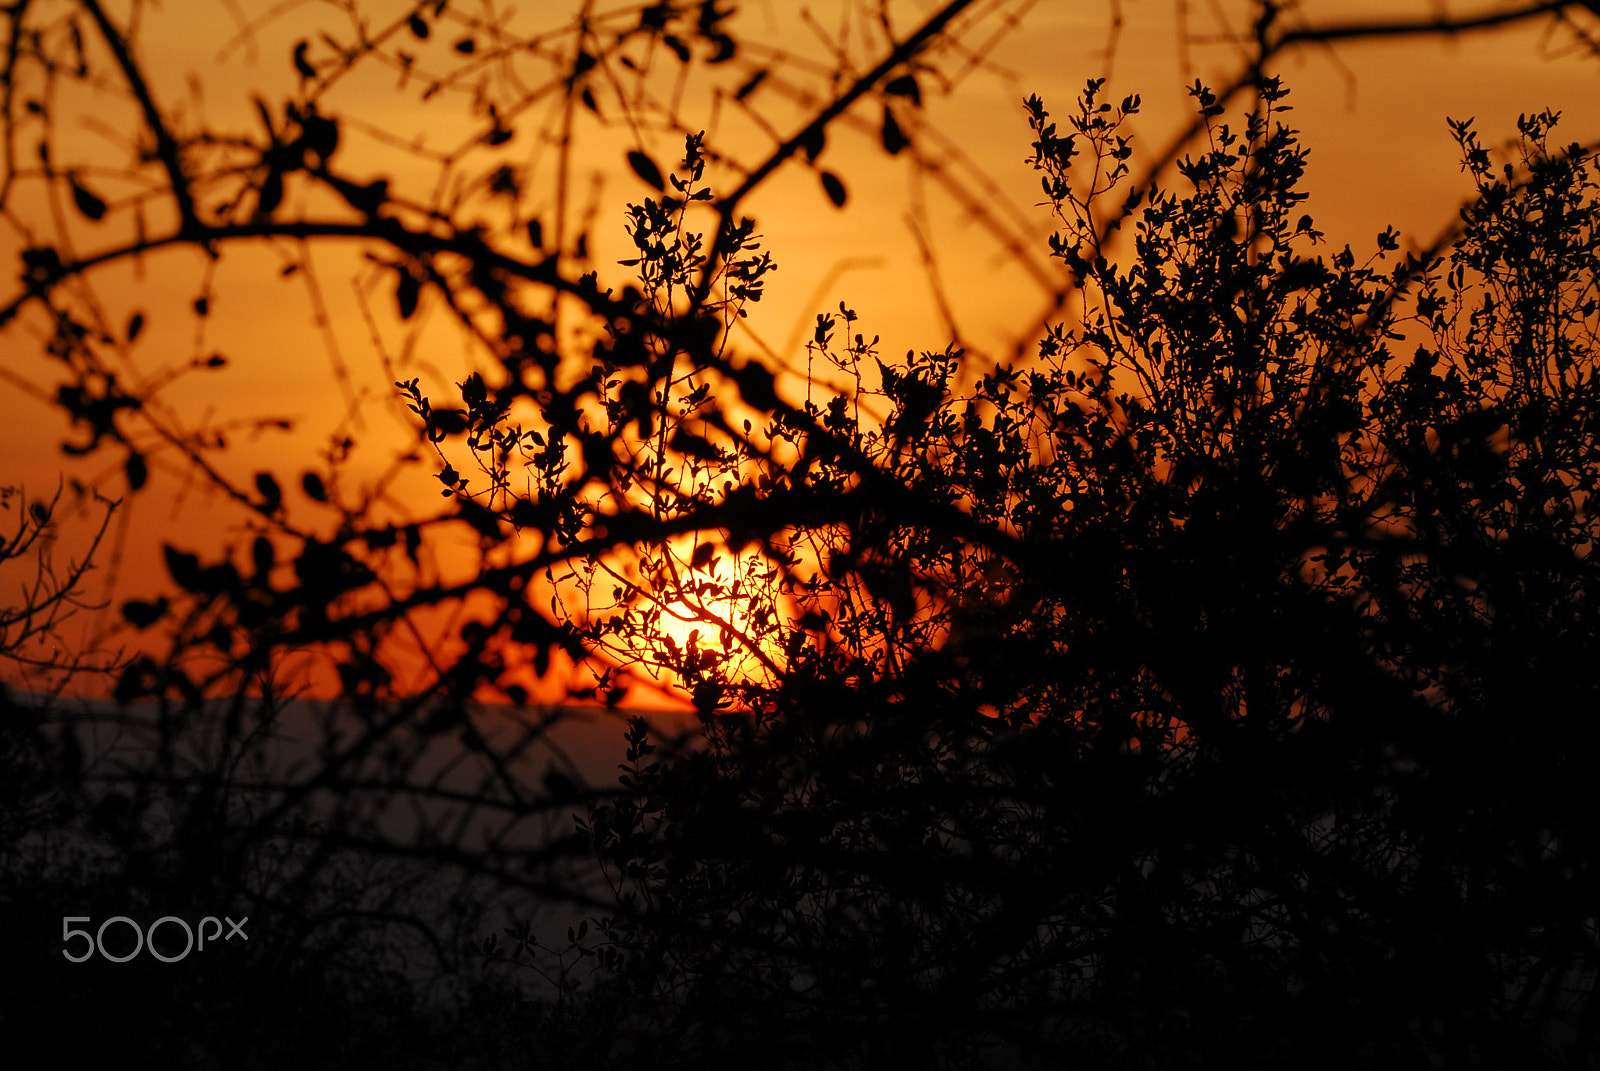 Nikon D200 sample photo. African sunset photography